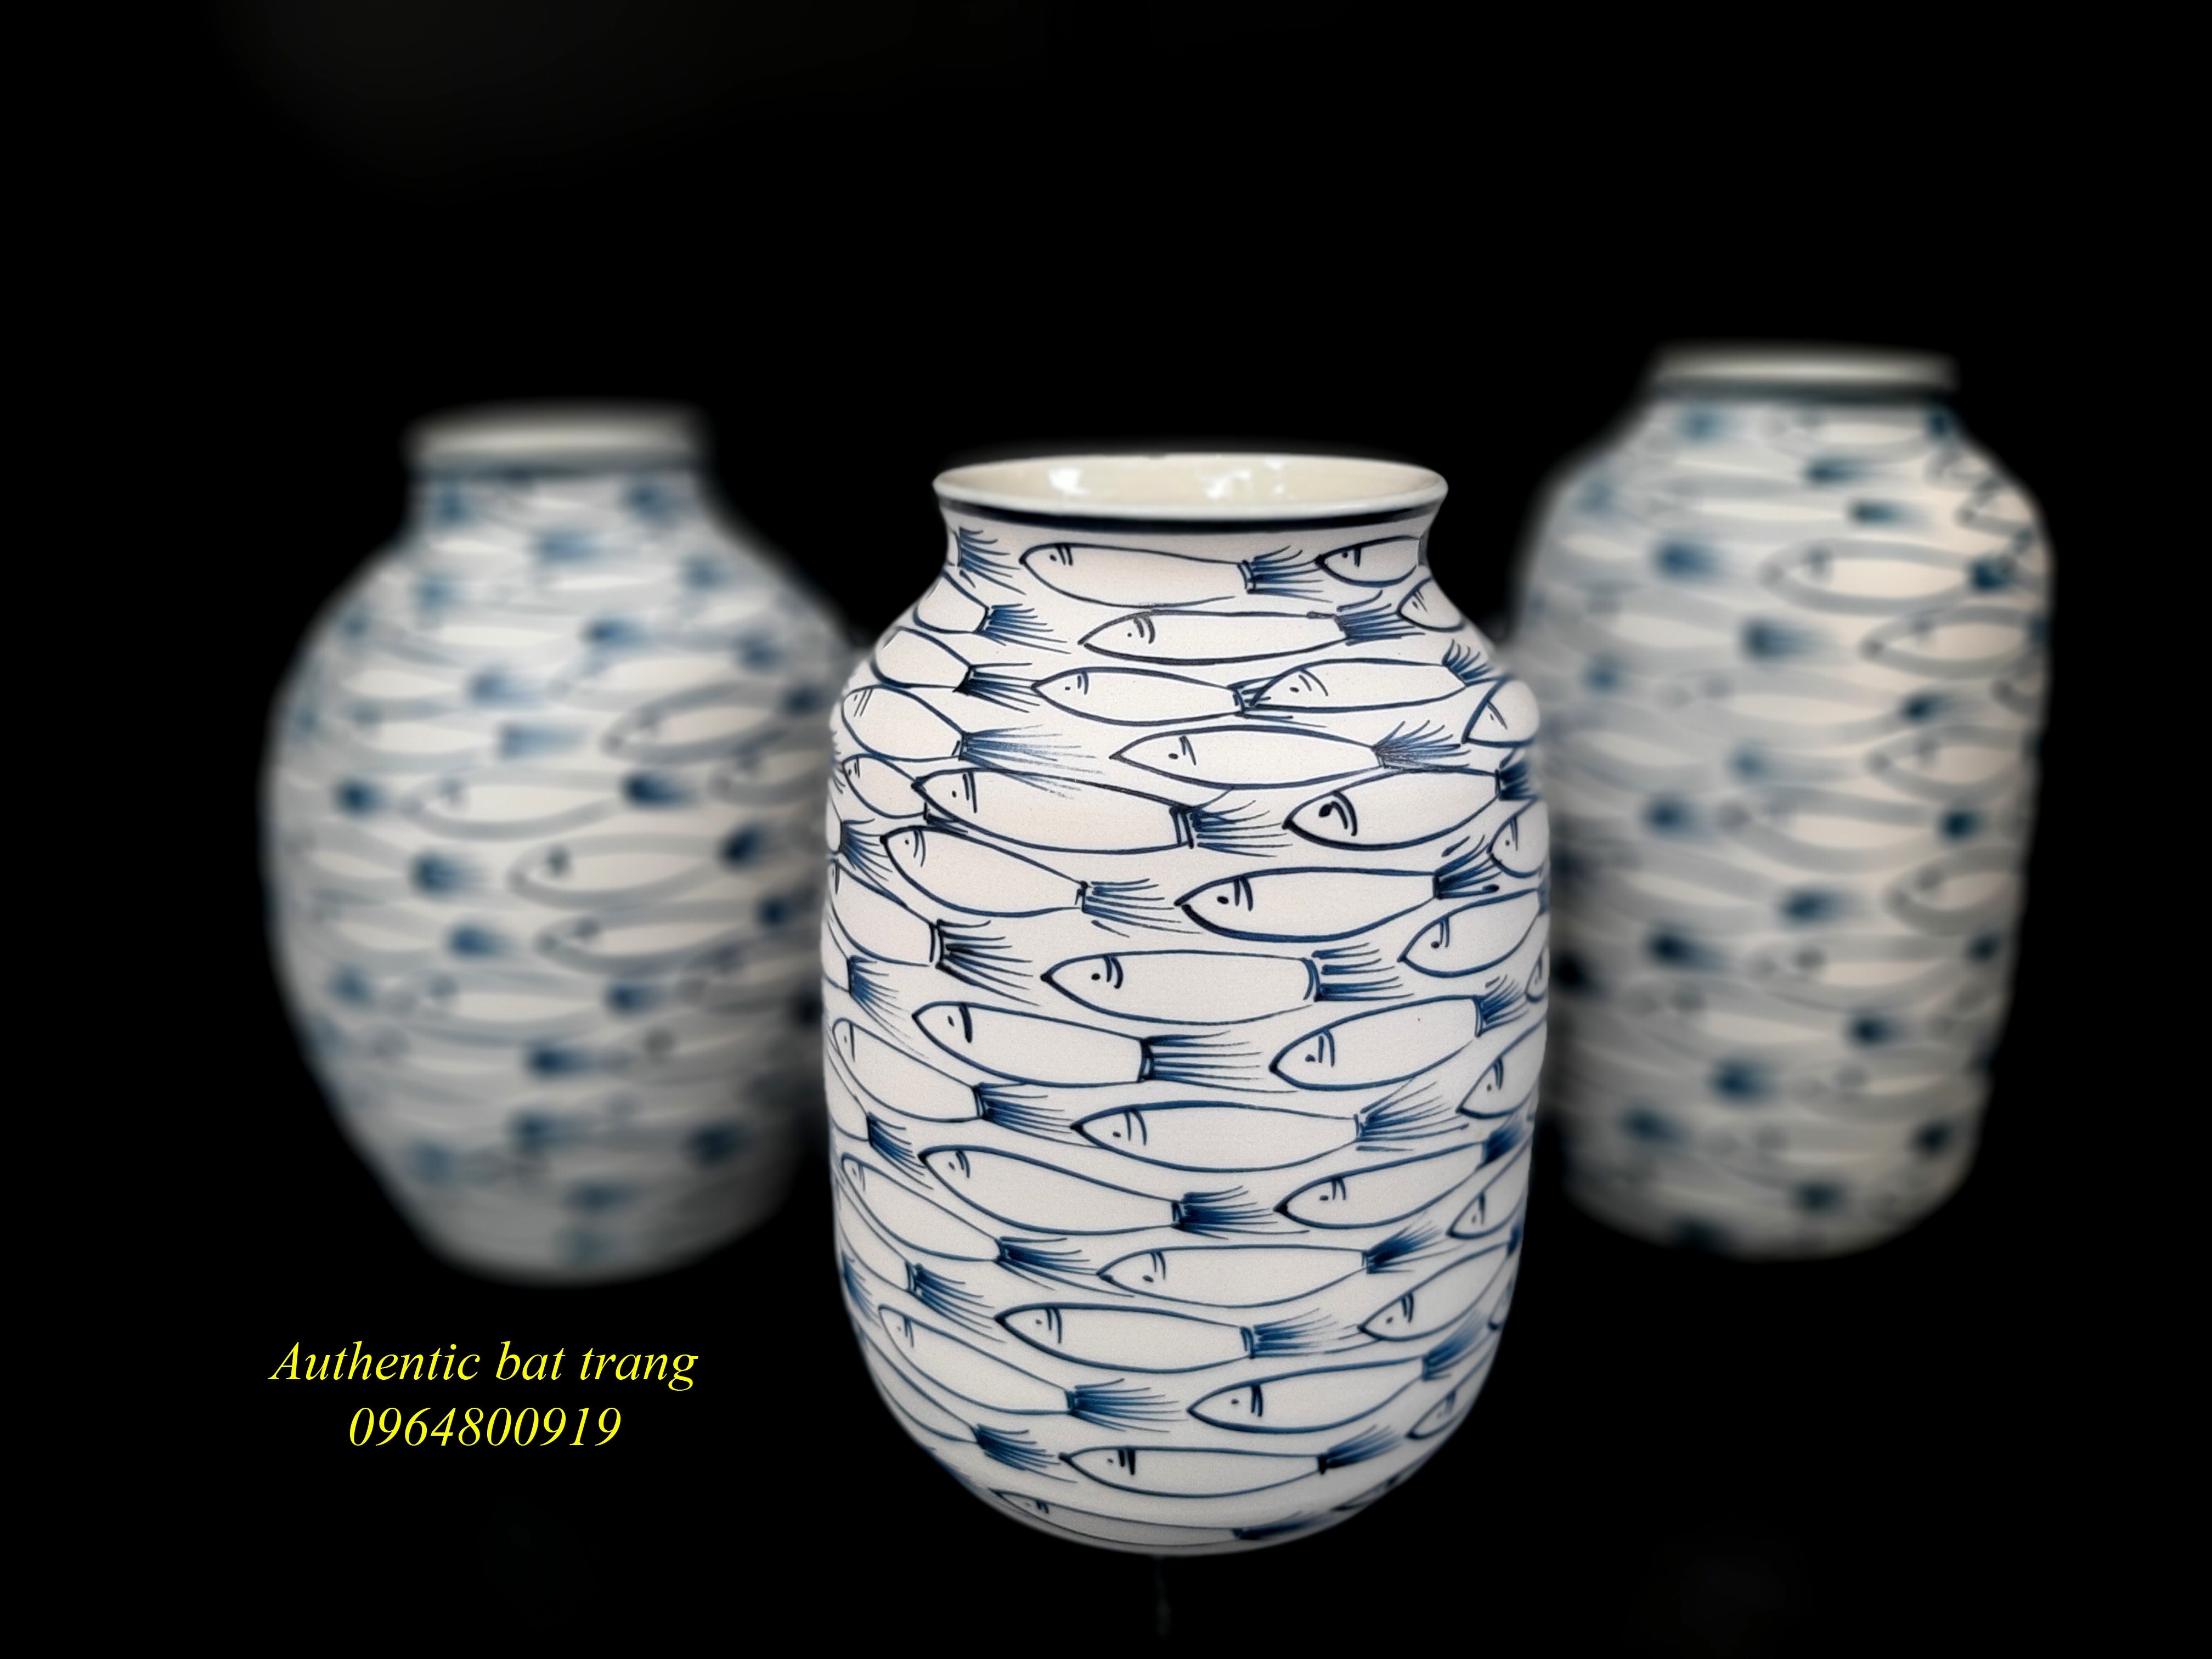 Fishes vase 1-  Bình gốm cắm hoa vẽ cá đàn, sản phẩm gốm thủ công, vuốt và vẽ tay, sản xuất tại xưởng gốm Authentic bat trang